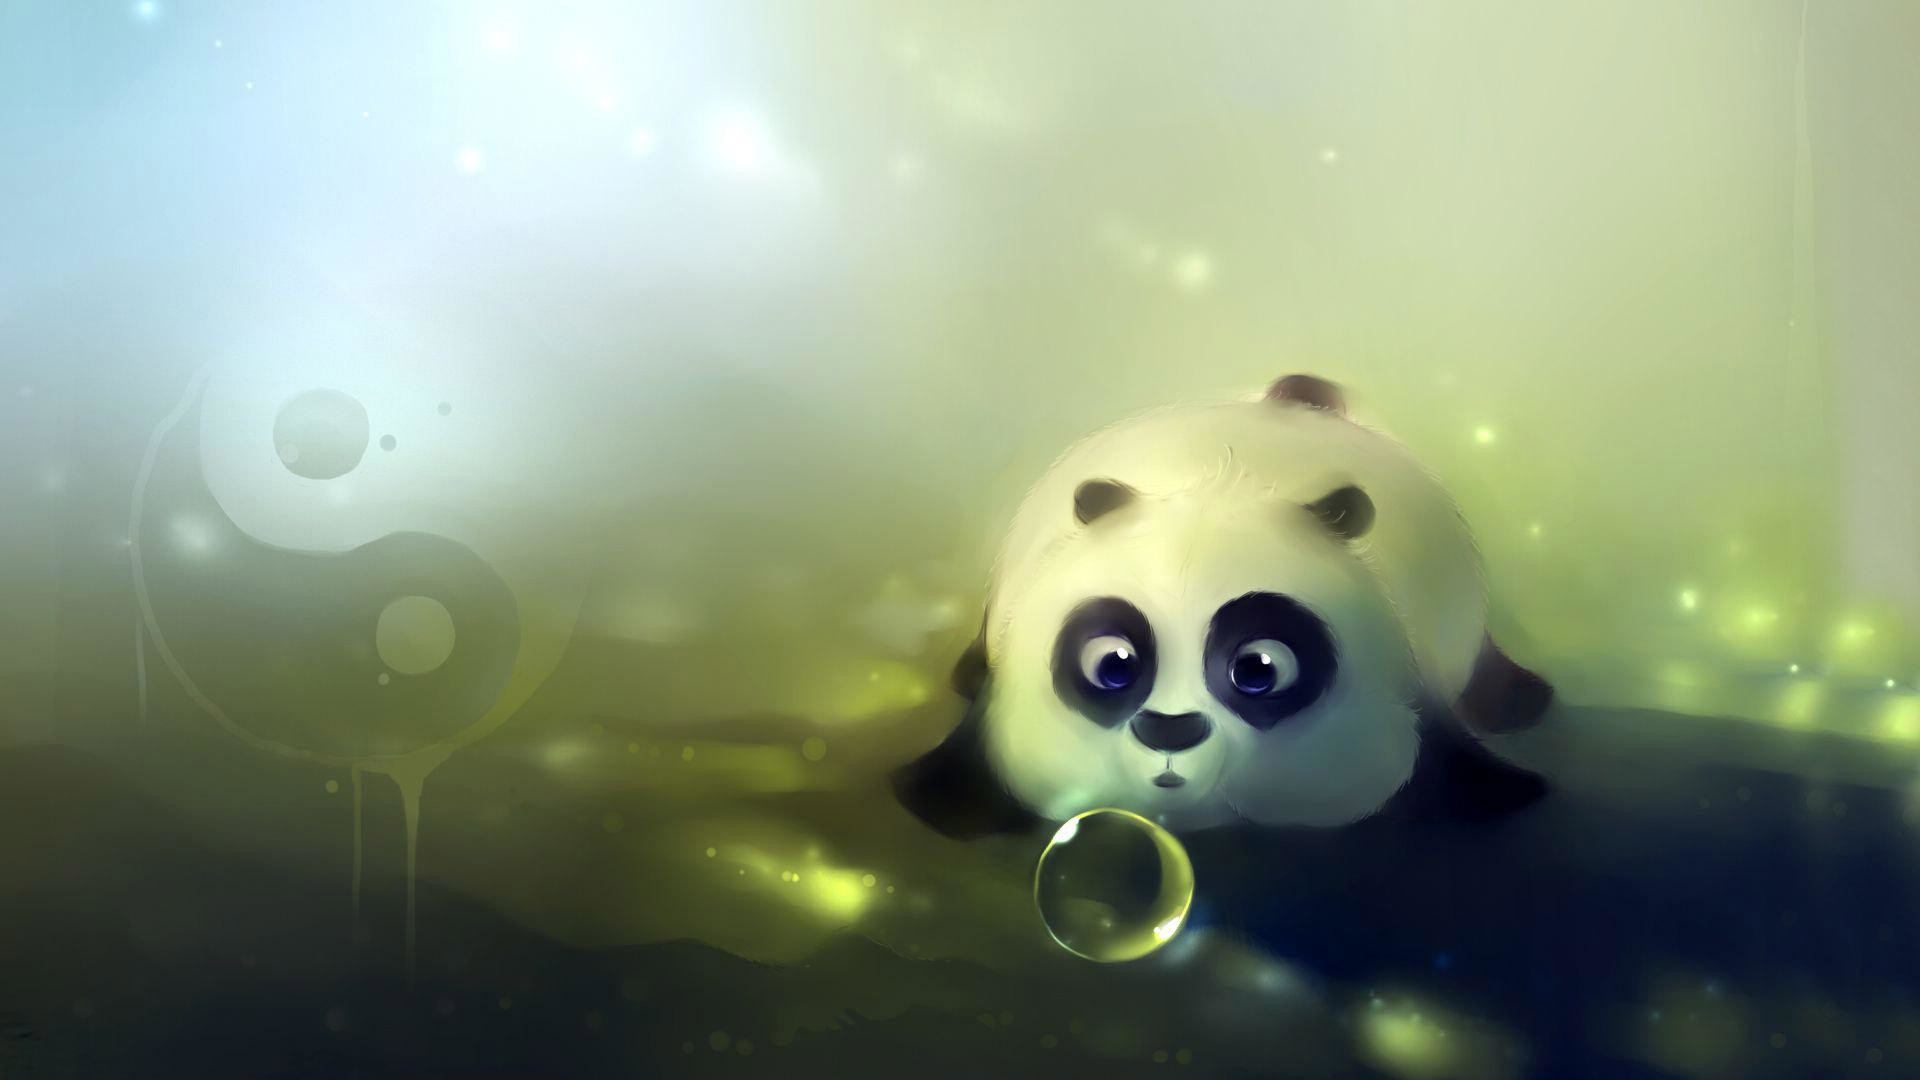 1920x1080 Cartoon panda looks cute images in 3d.